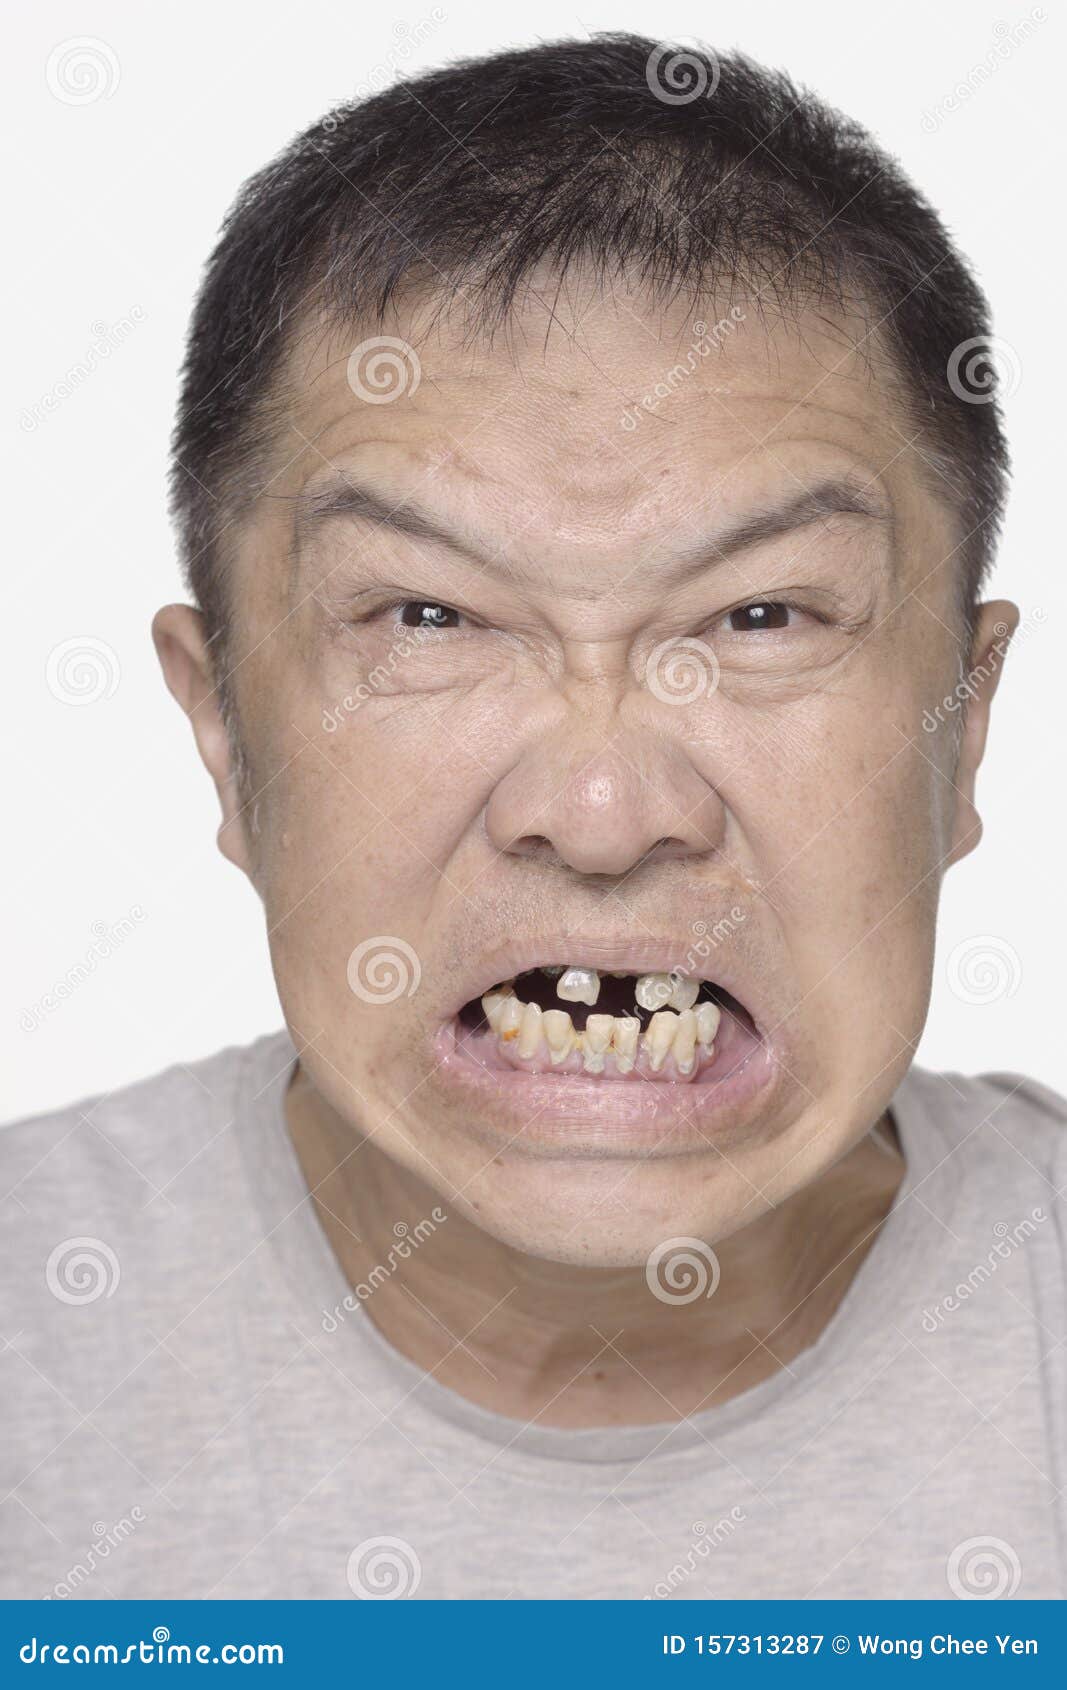 Men with bad teeth